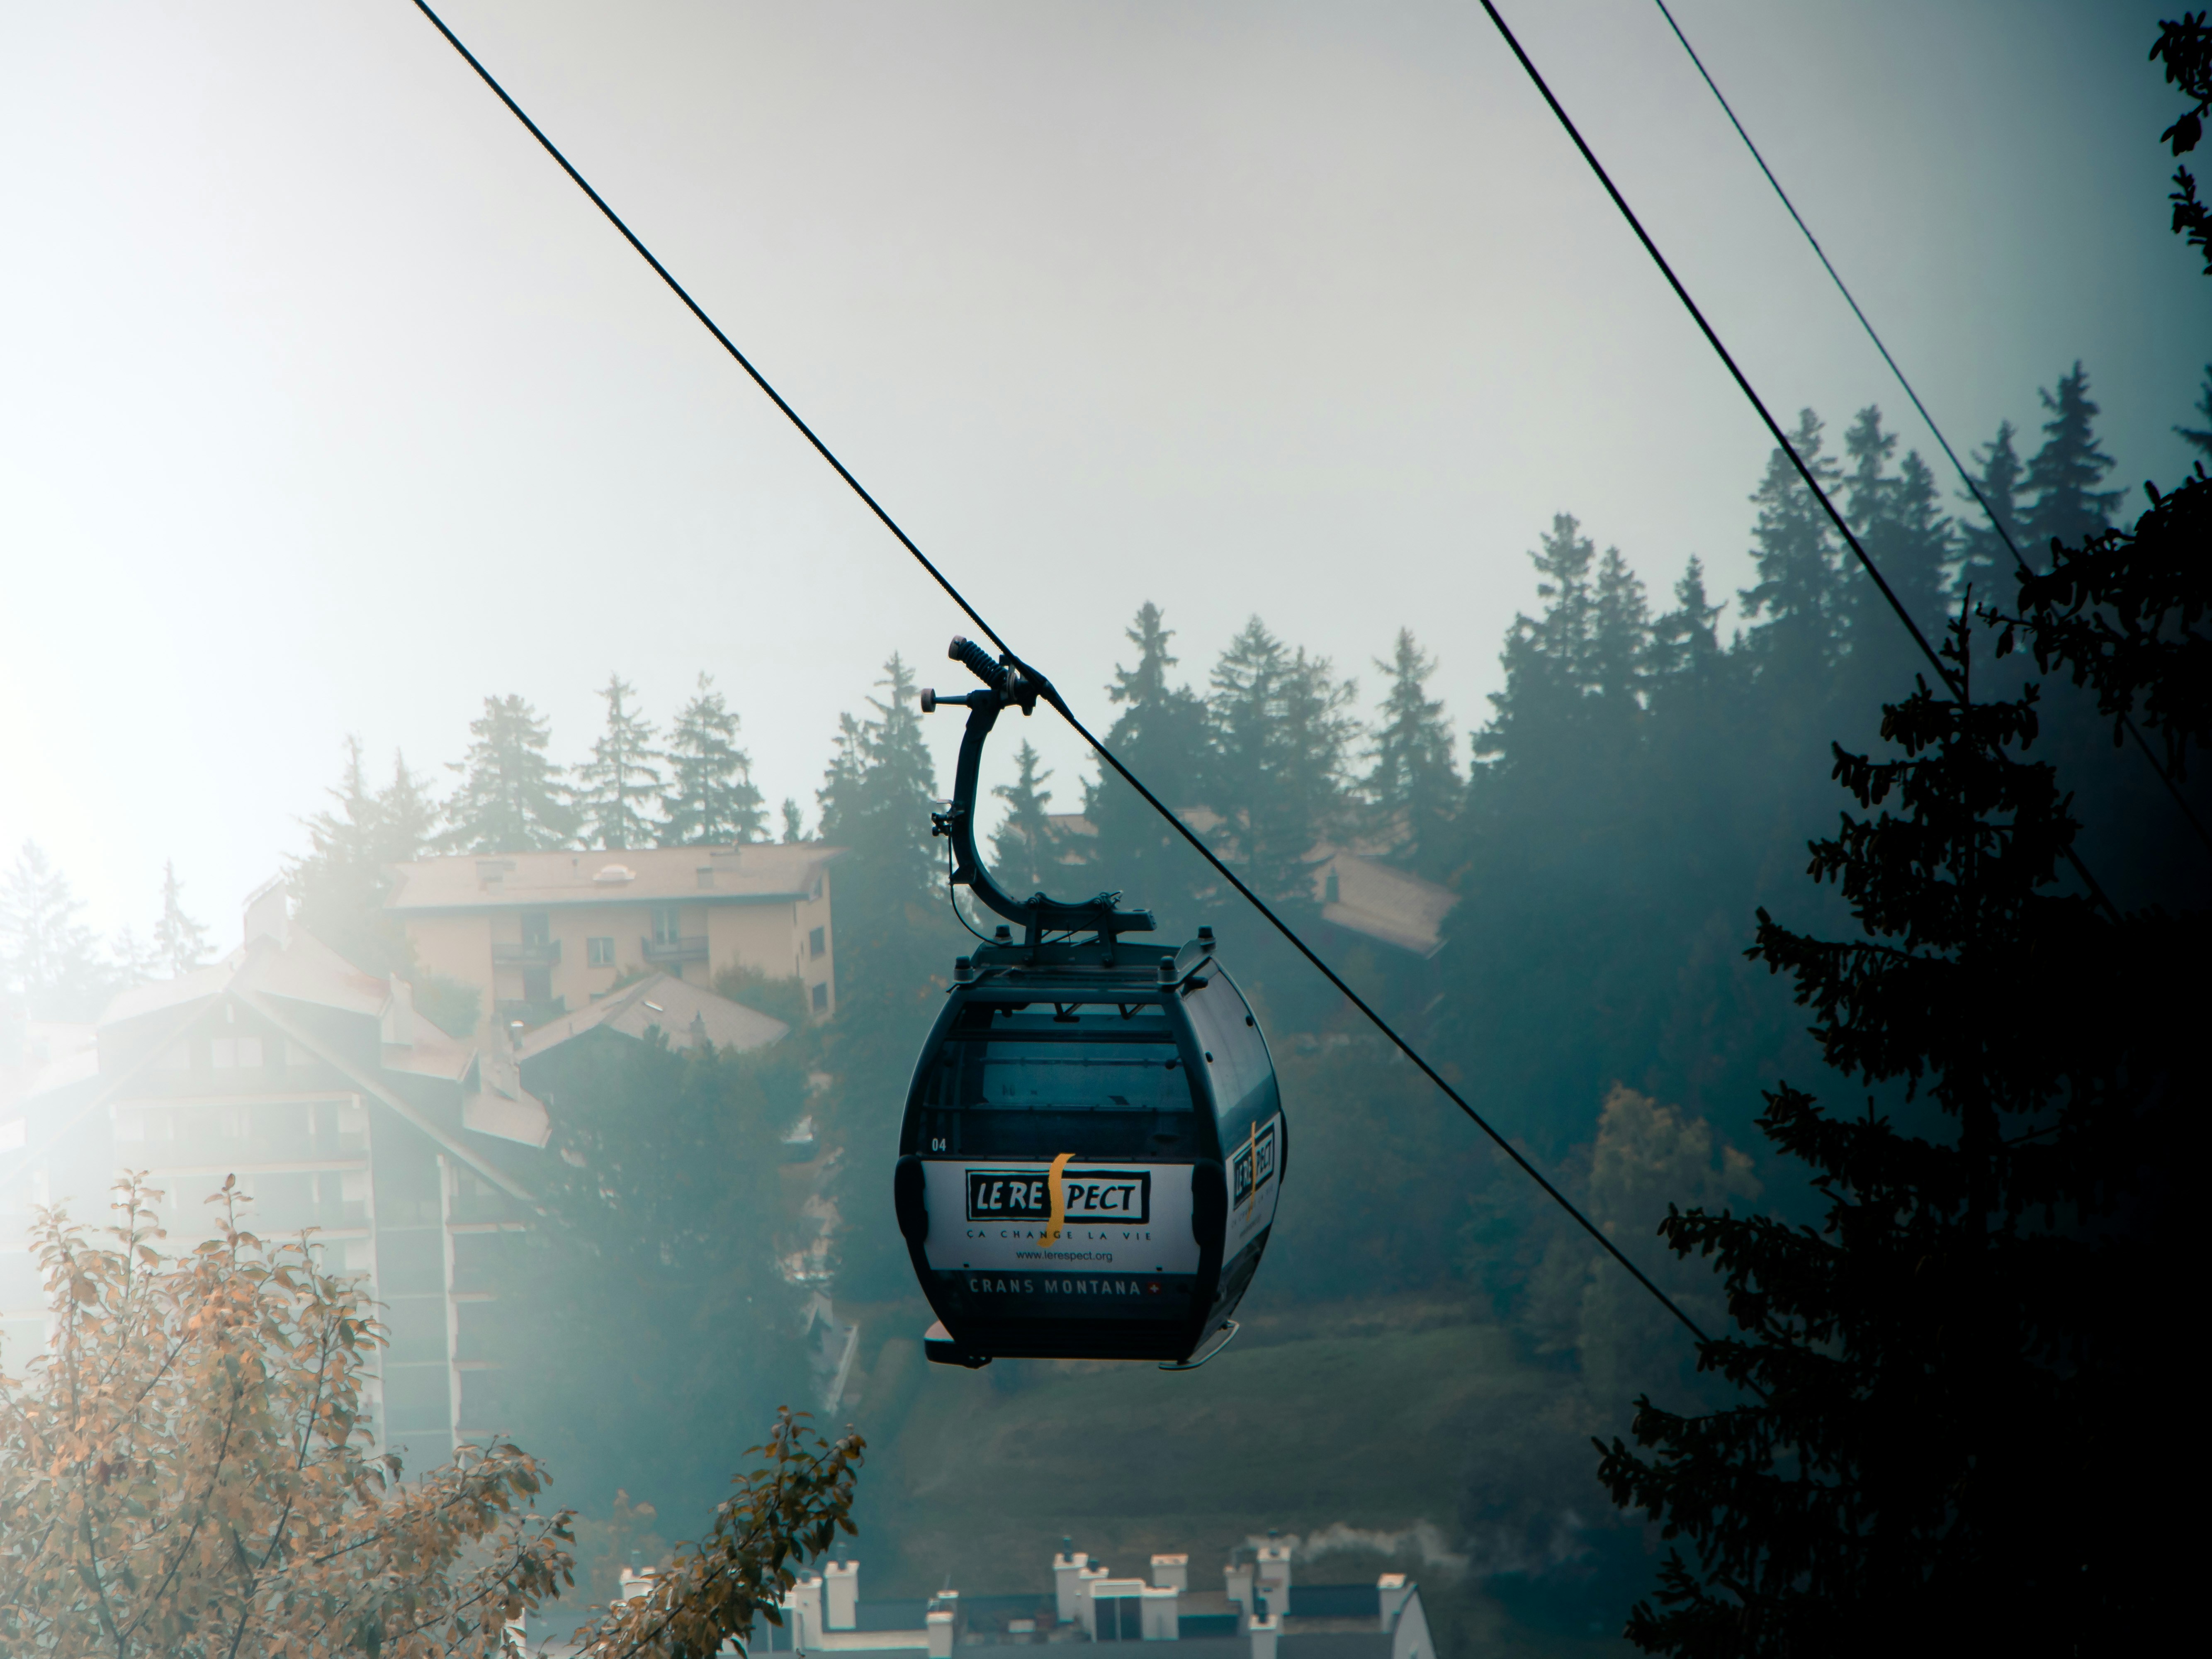 Gondola in the mountains